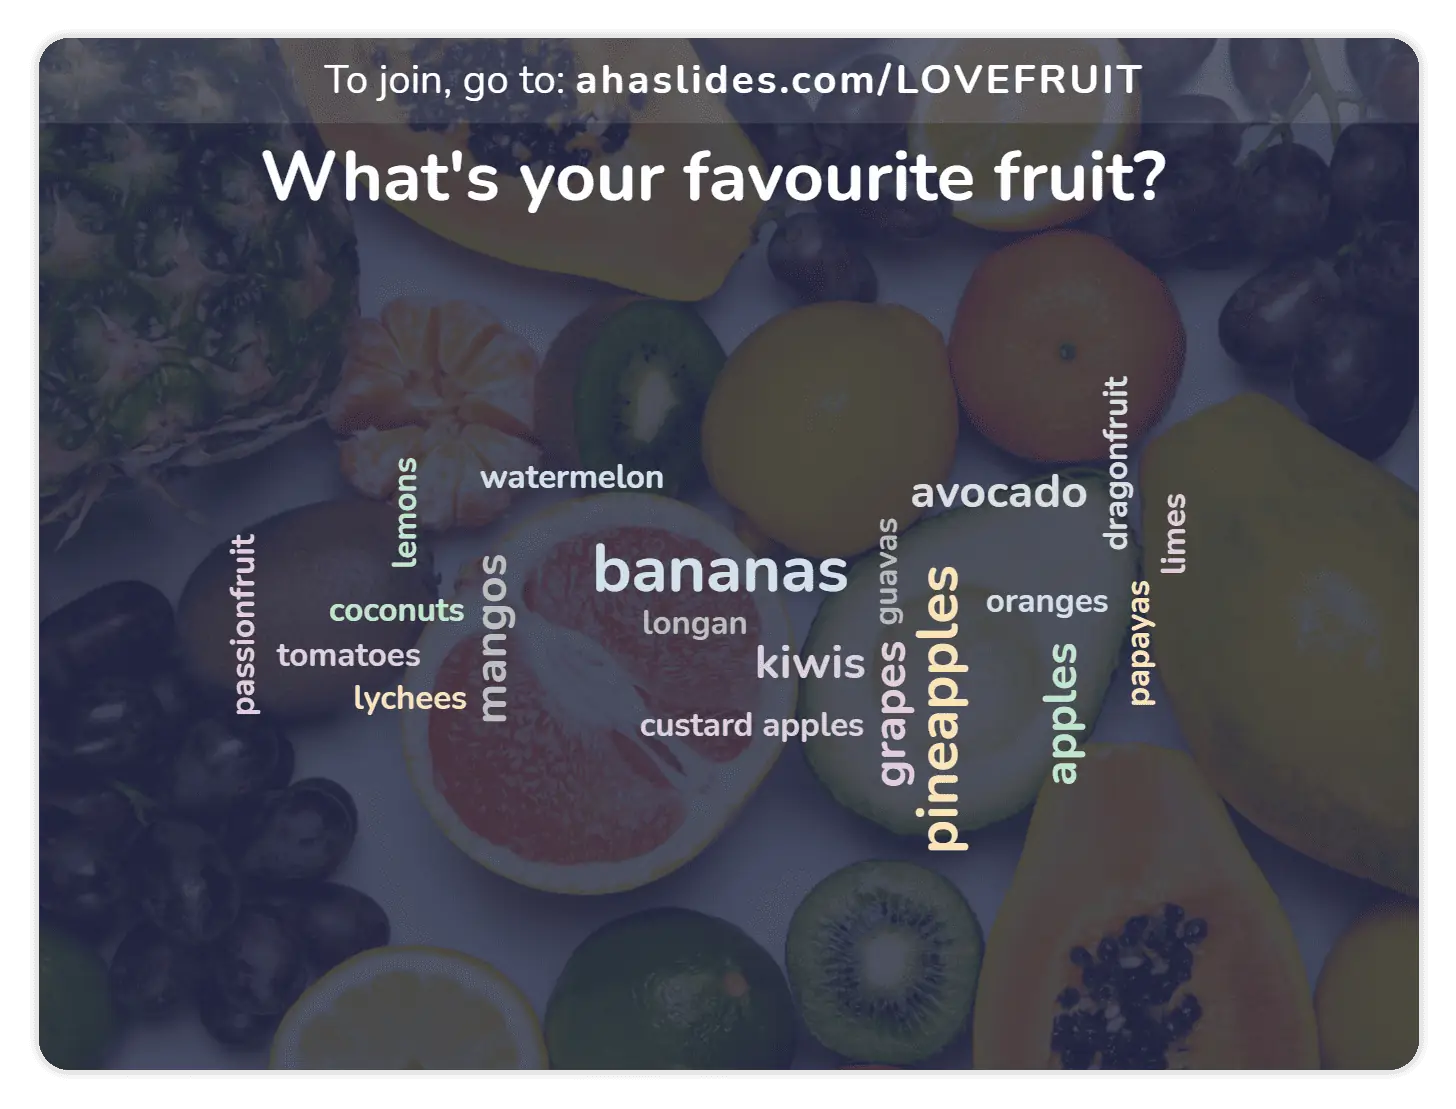 یک ابر کلمه زنده که می پرسد «میوه مورد علاقه شما چیست»، با پاسخ